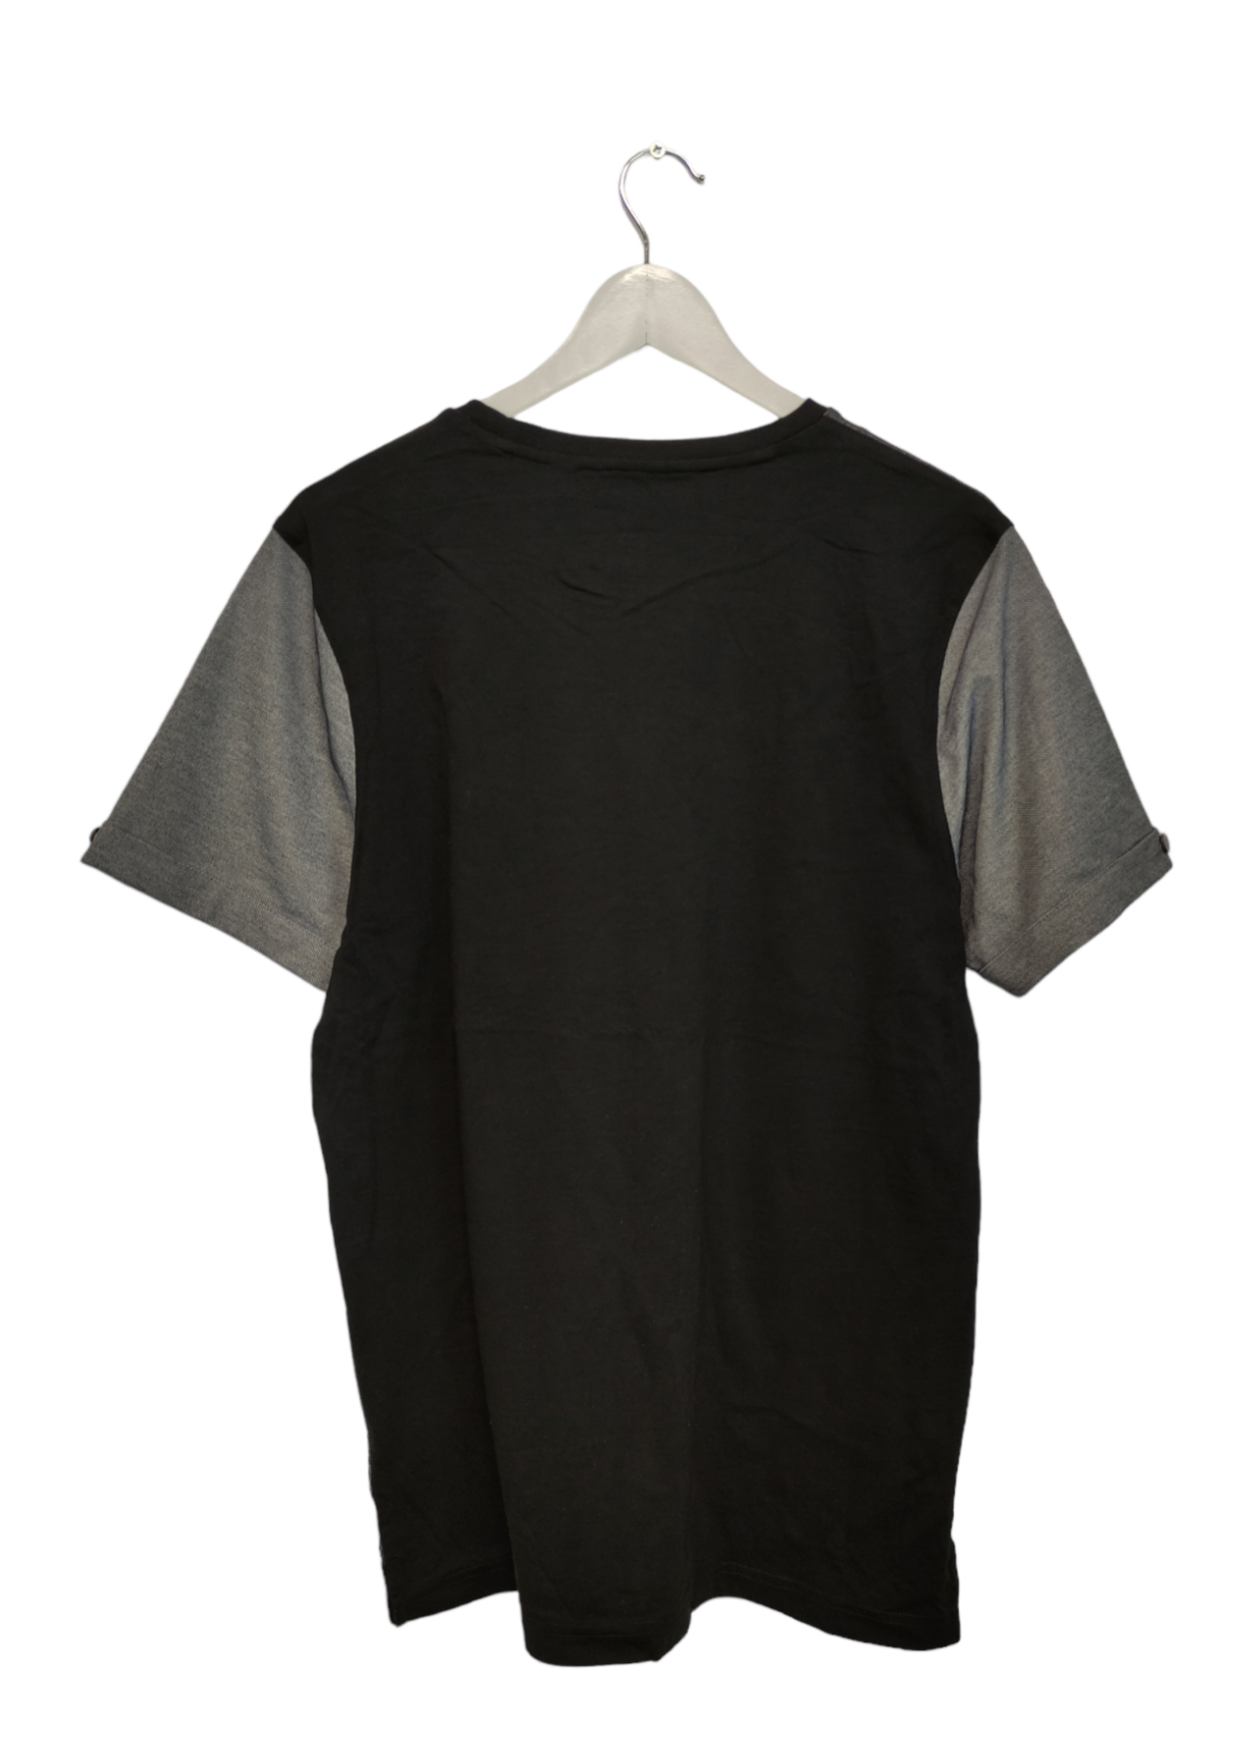 Ανδρική Μπλούζα - T-Shirt LUKE σε Γκρι χρώματα (M/L)